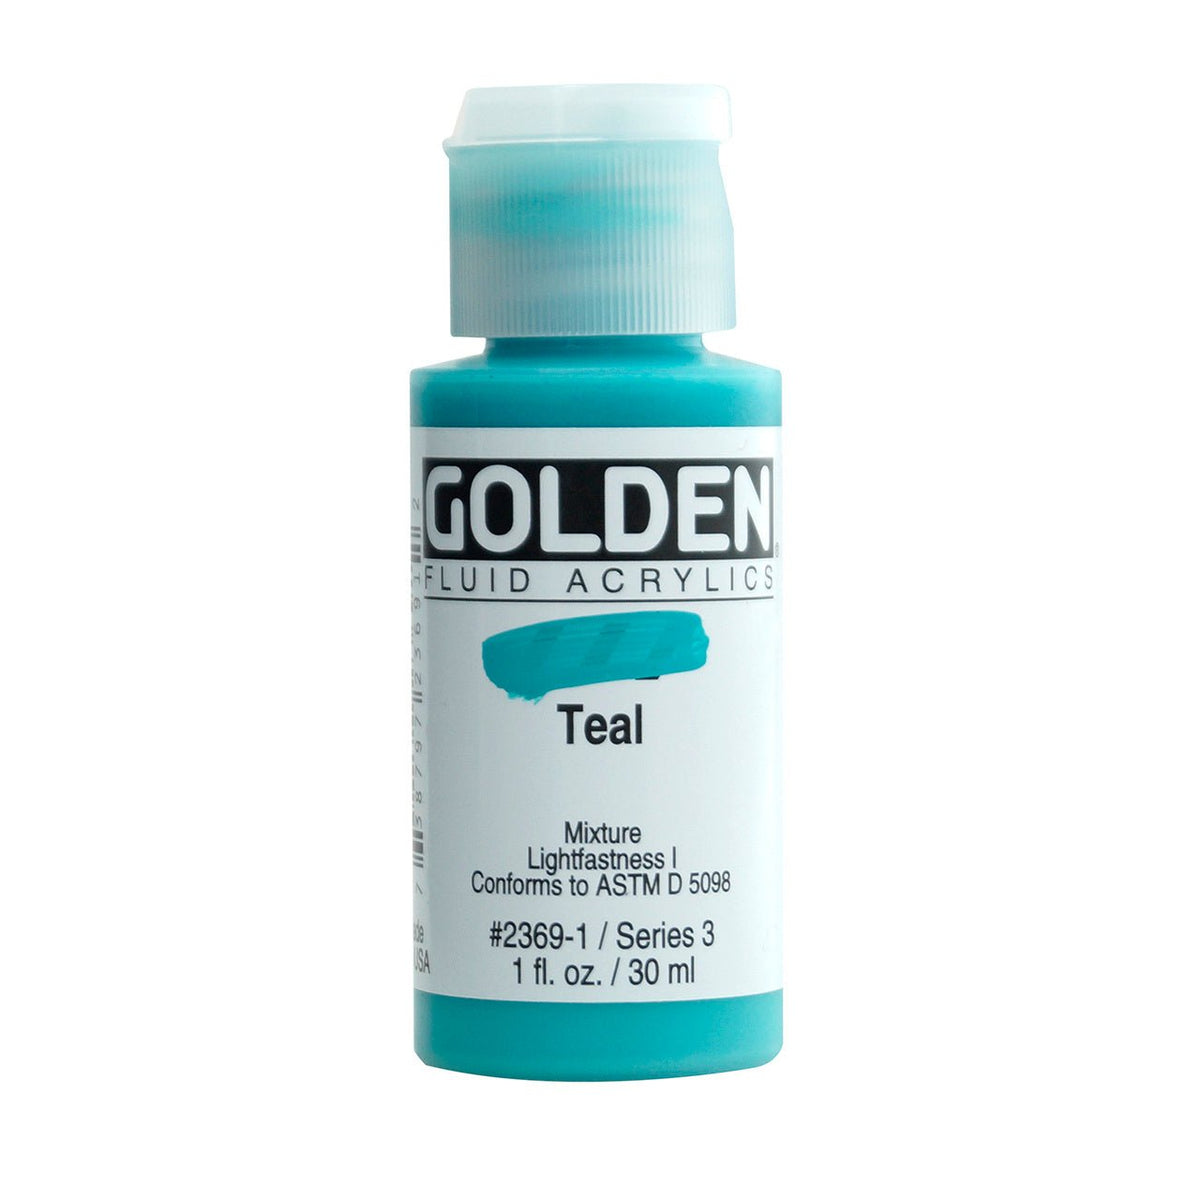 Golden Fluid Acrylic Teal 1 oz - merriartist.com